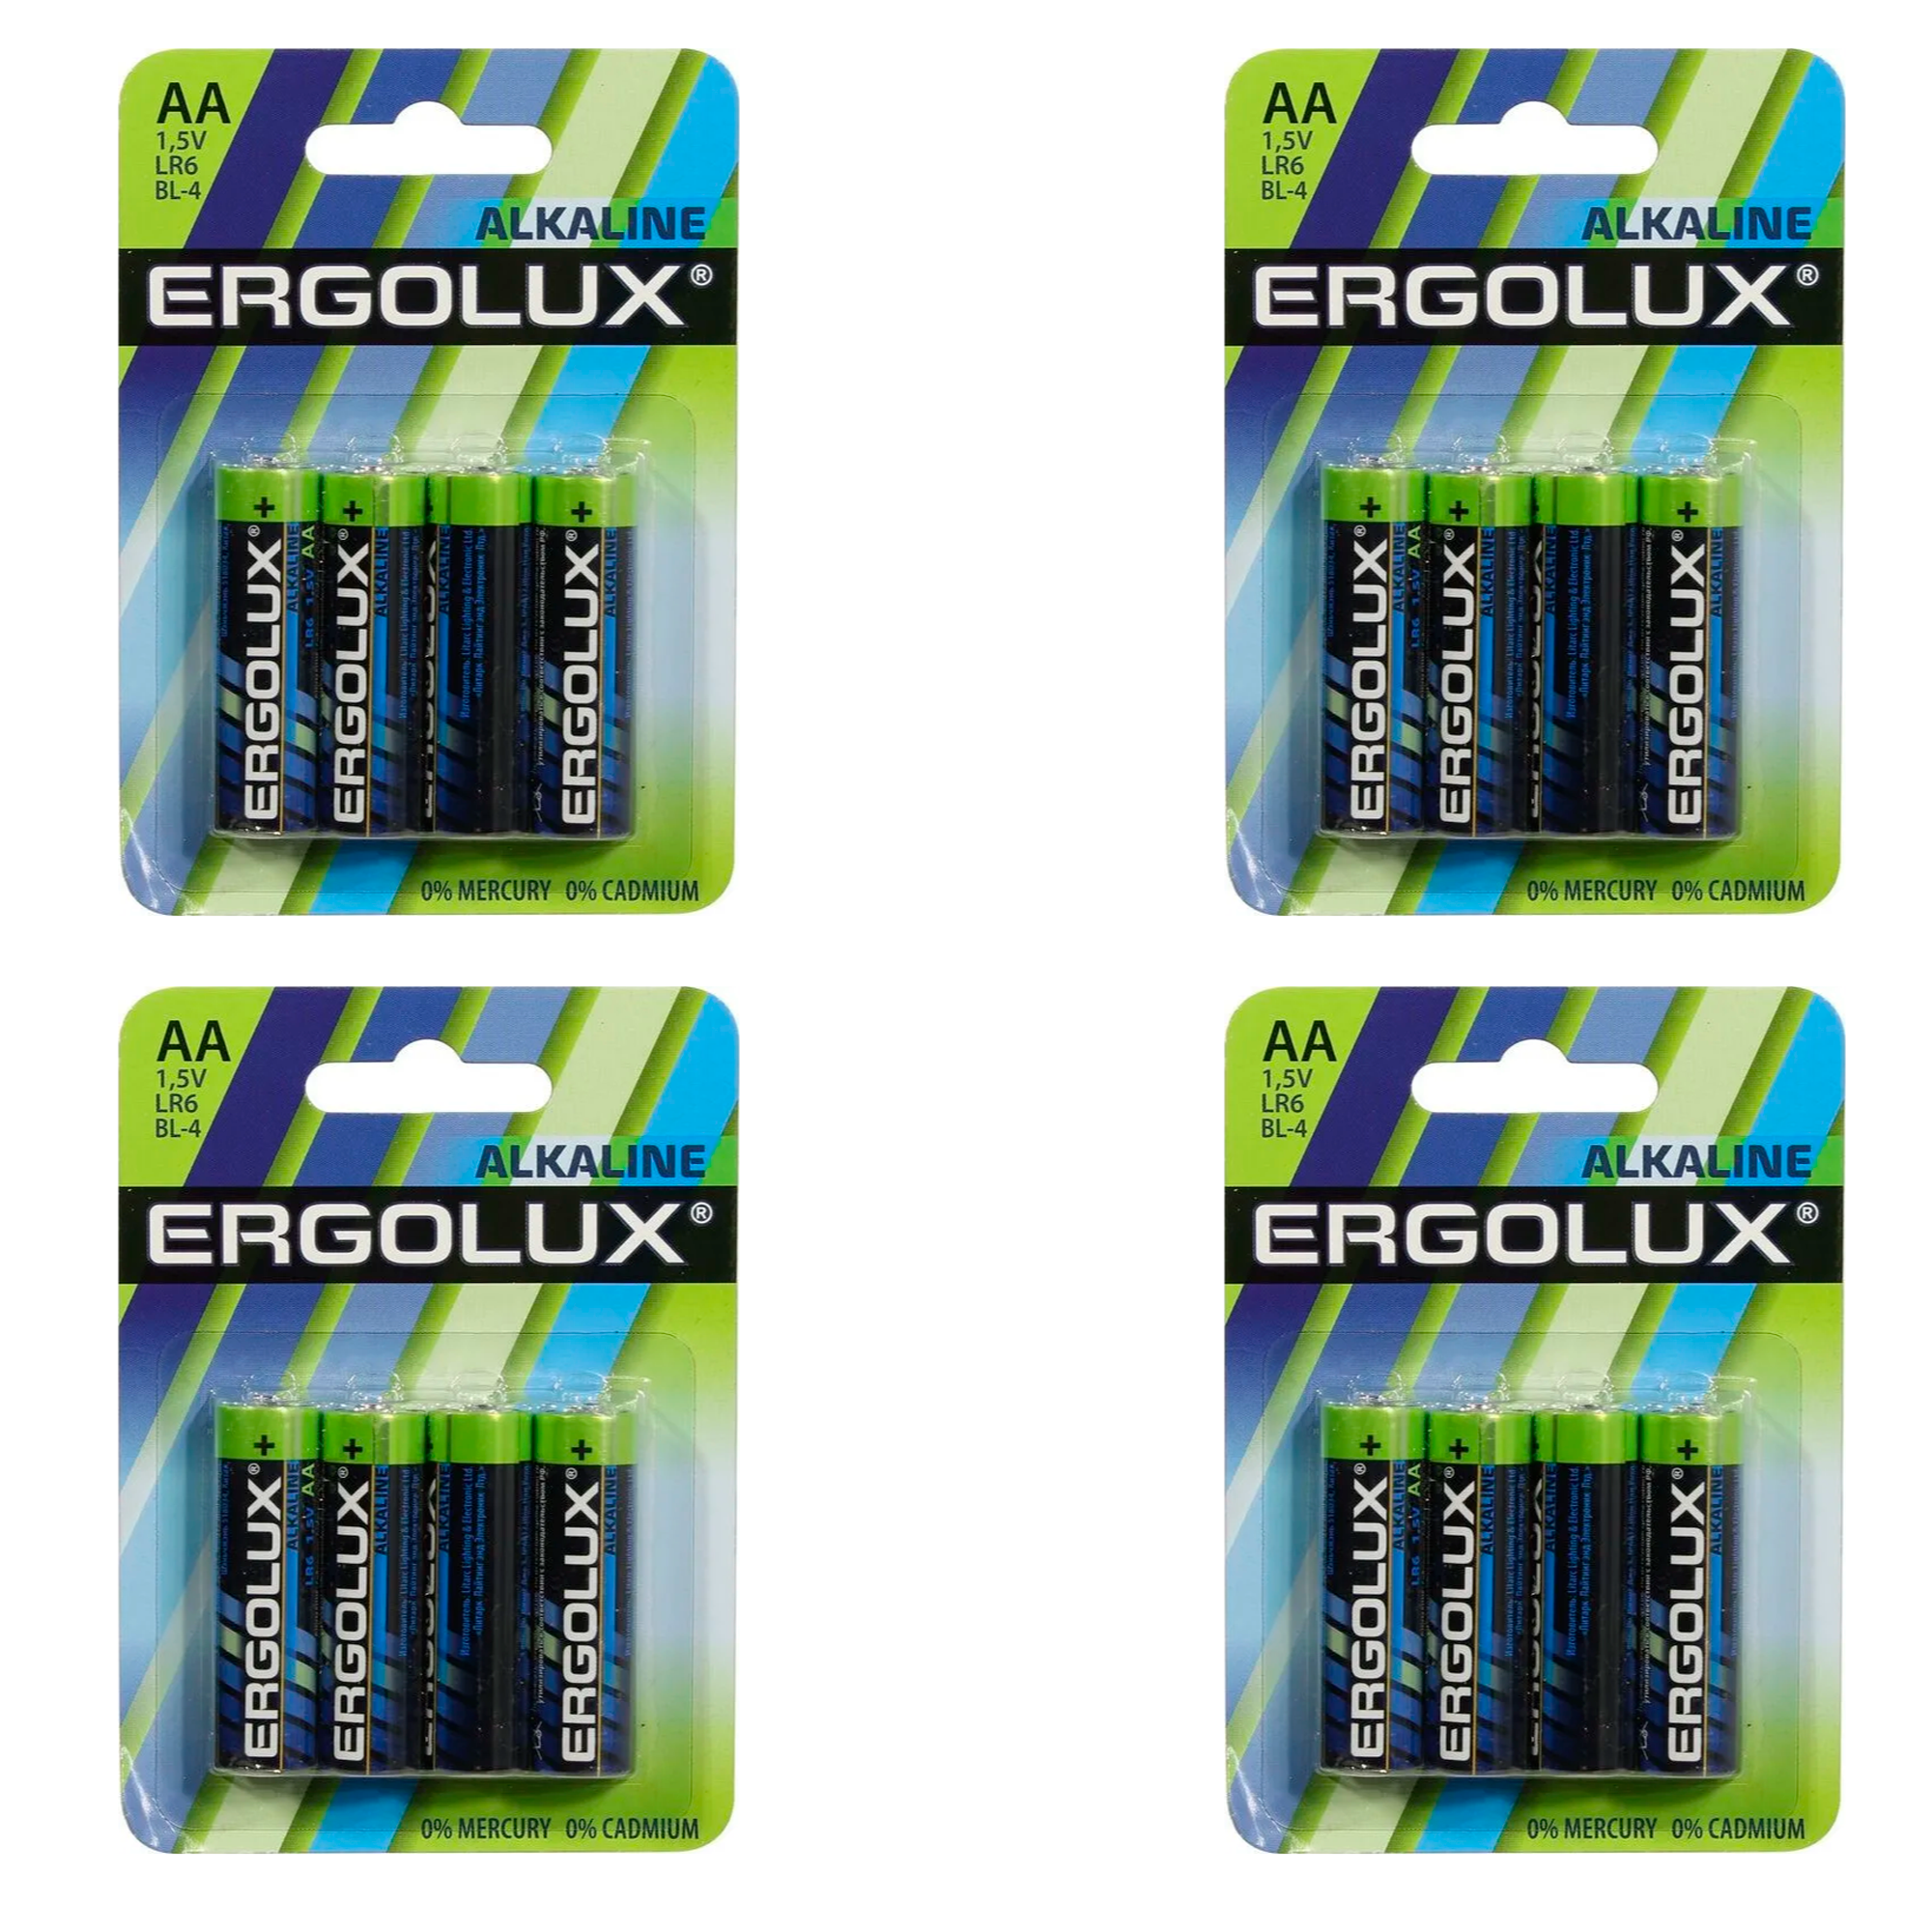 Щелочная батарейка Ergolux Alkaline АА, LR6 BP-4, 1.5 В, 4шт, 4уп батарейка щелочная ergolux alkaline lr6 bp 24 aa 1 5v 24 шт